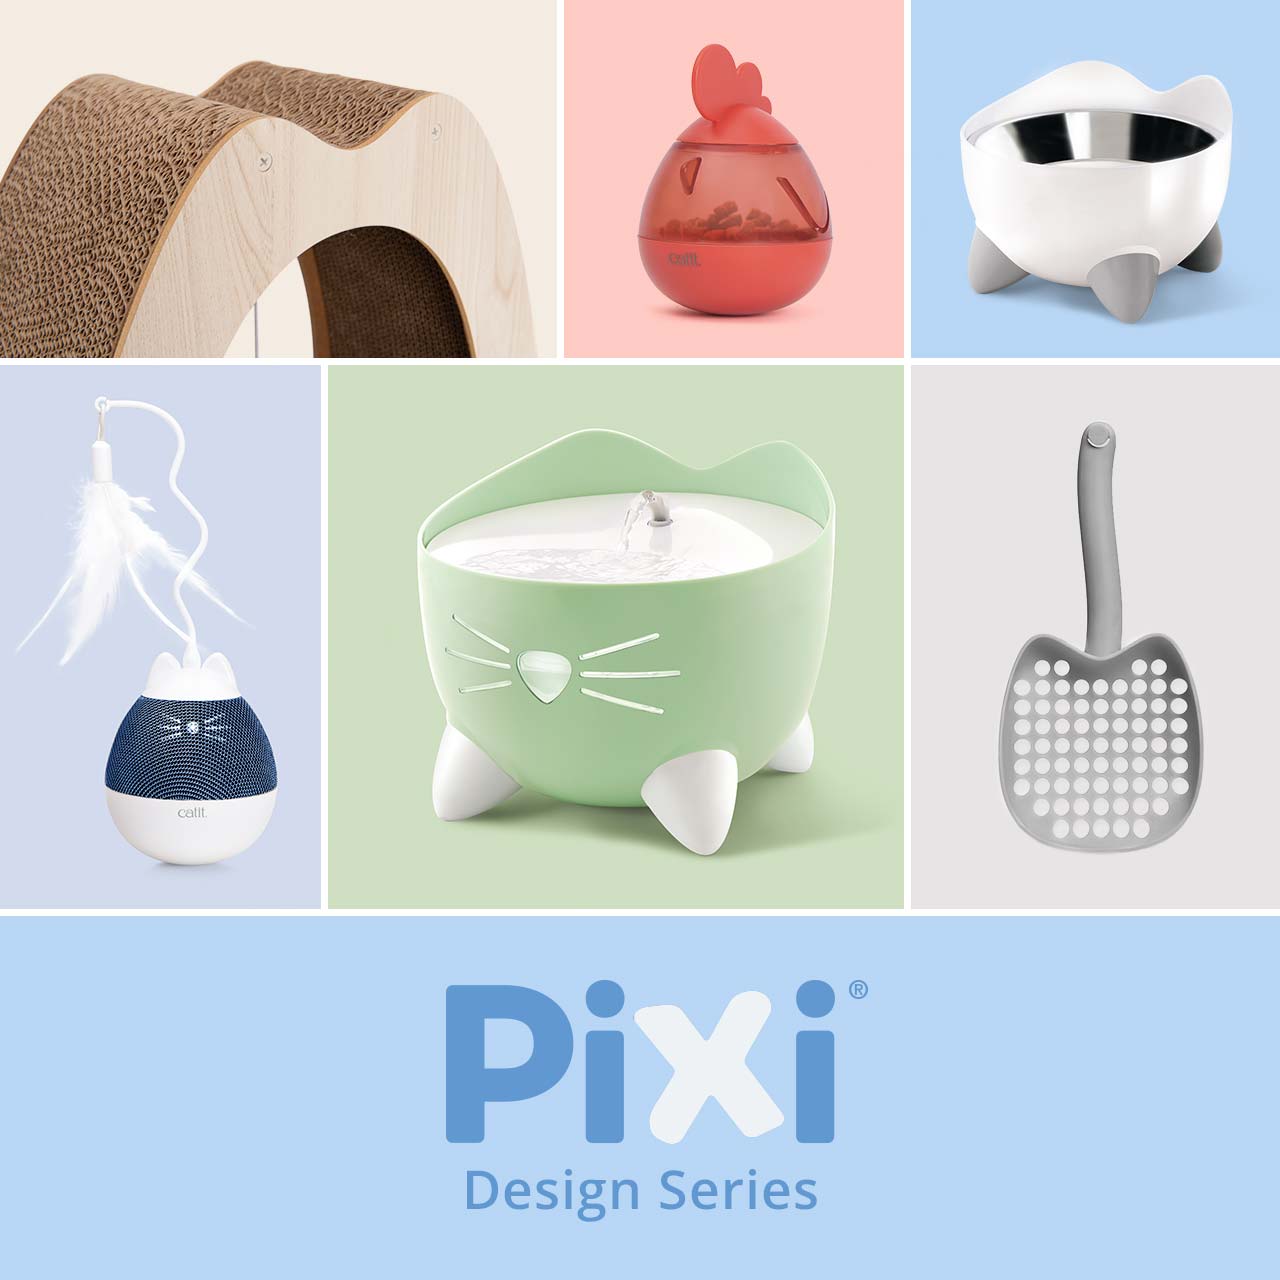 PIXI Design Series